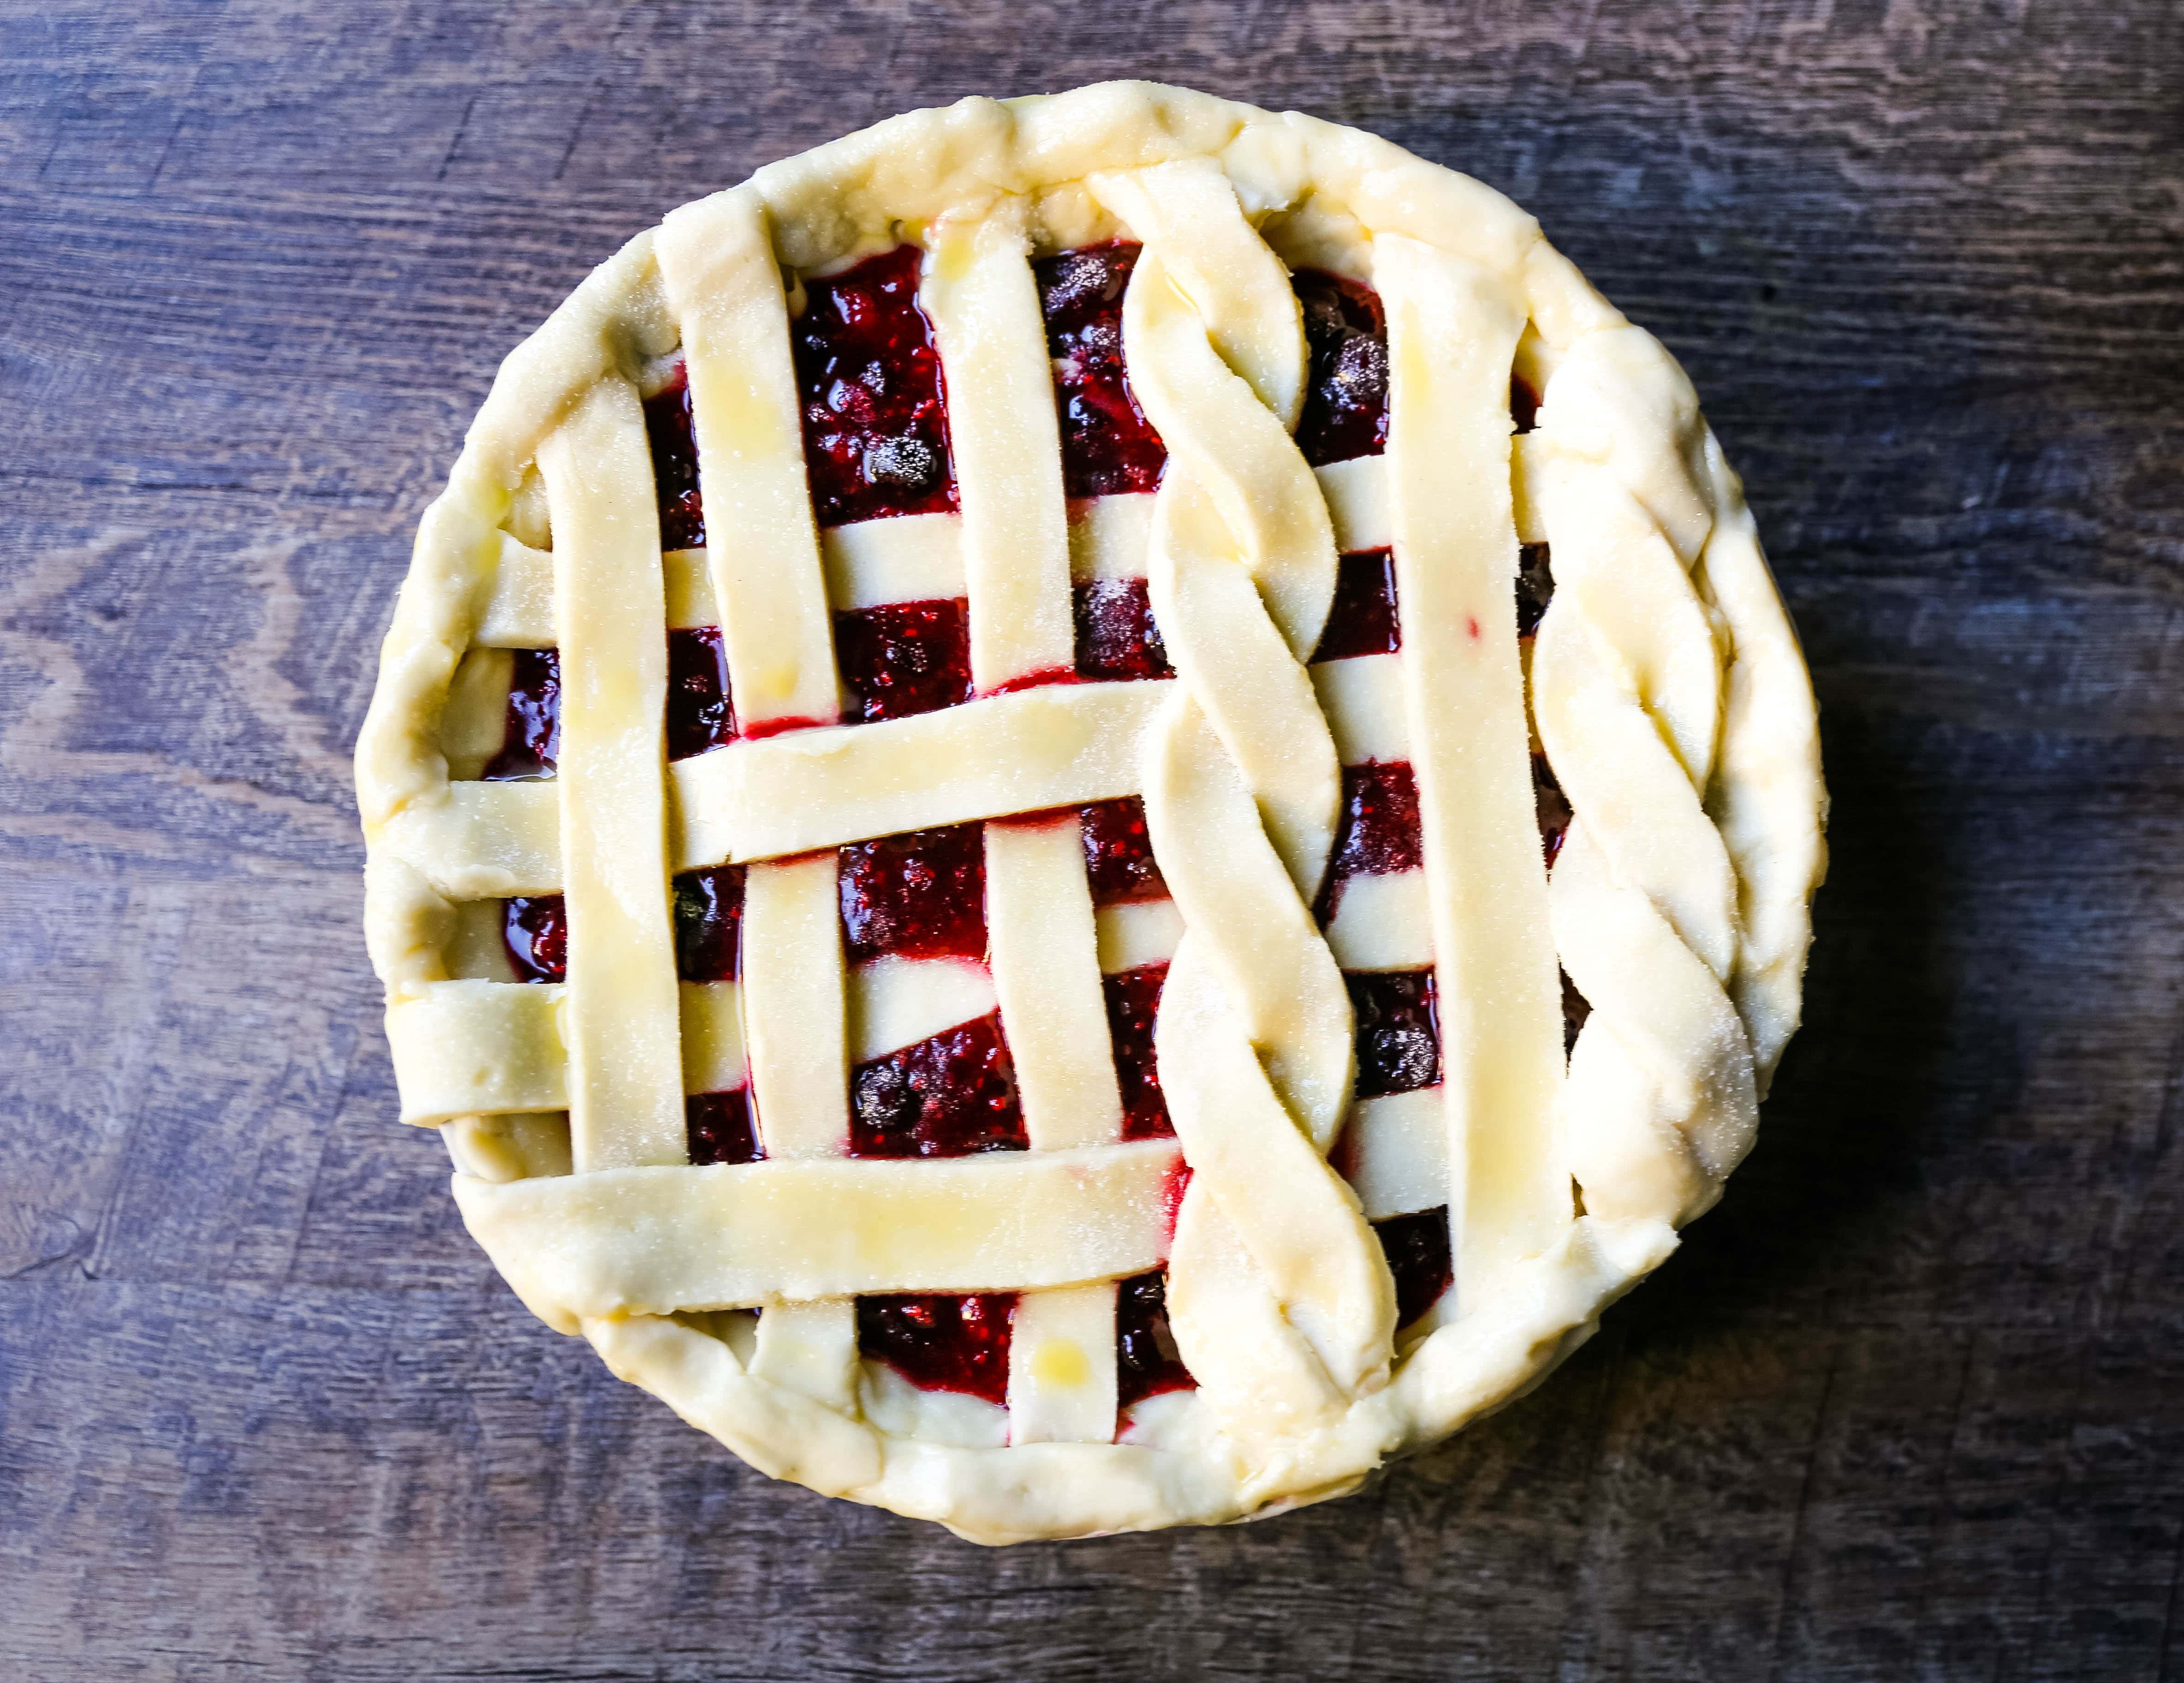 Triple tarte aux baies. La meilleure recette de tarte aux baies faite maison avec une croûte de tarte beurrée. Complétez-la avec de la glace à la gousse de vanille et vous avez le parfait dessert aux baies ! La meilleure recette de tarte aux baies. www.modernhoney.com #berrypie #pie #berries #tripleberrypie #thanksgiving